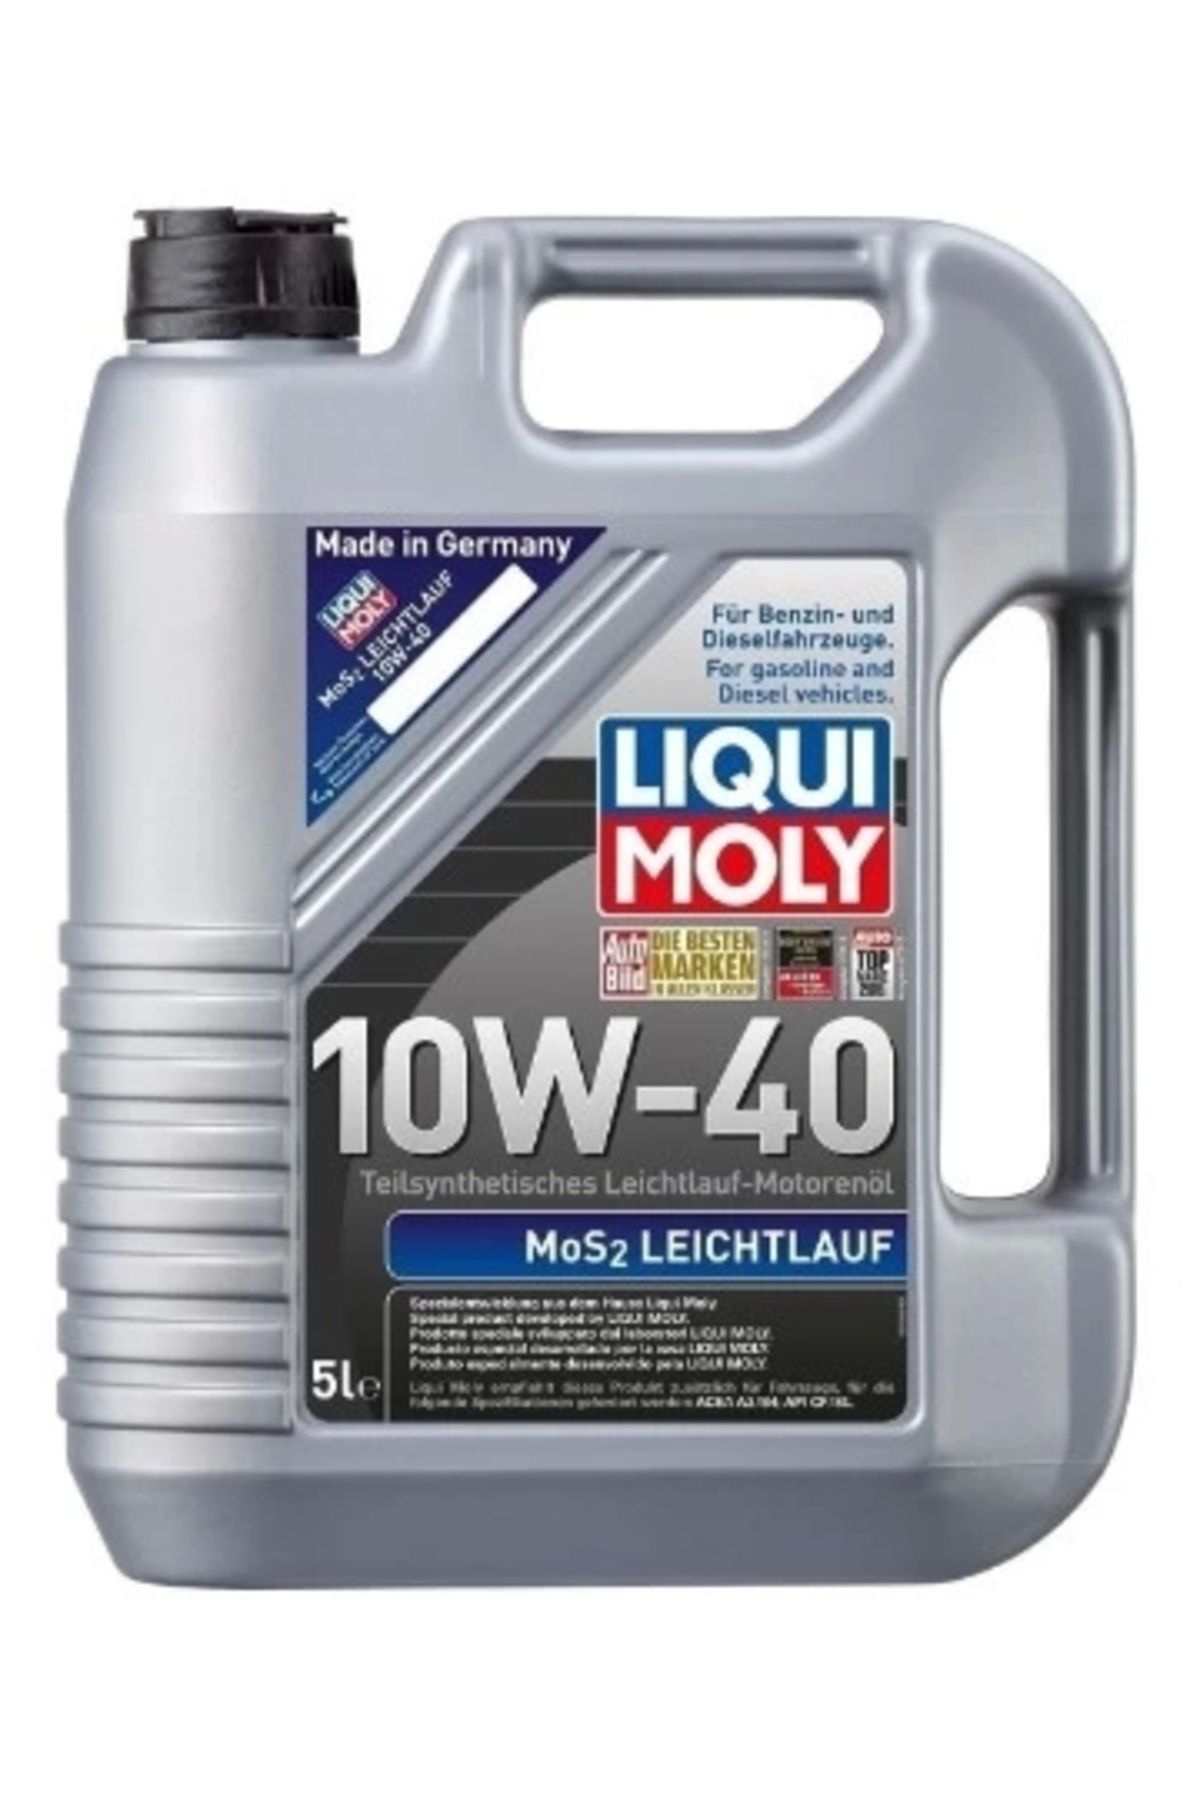 Liqui Moly Mos2 Leichtlauf 10w-40 5 Litre